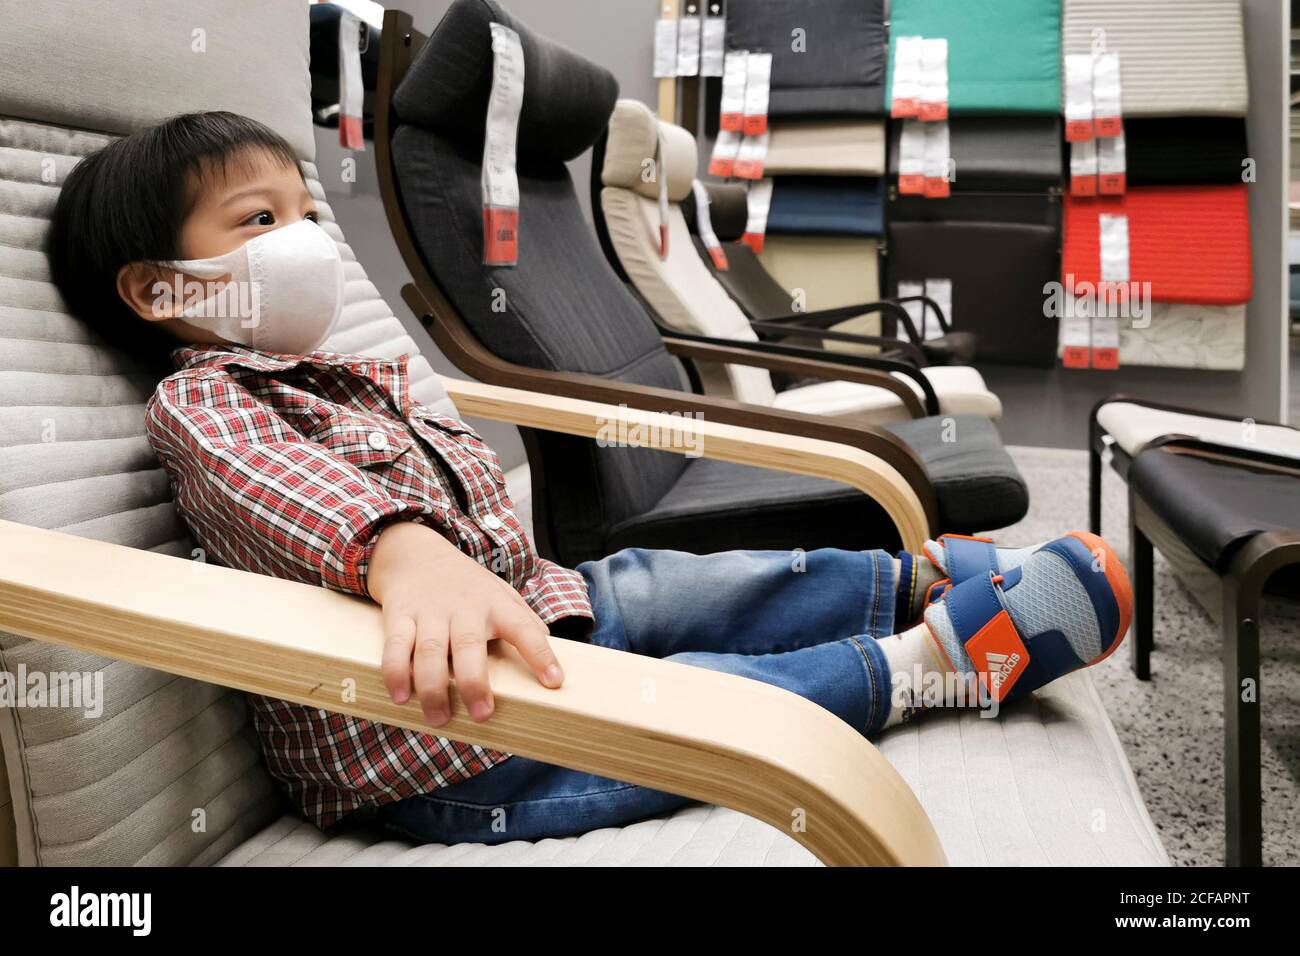 Bangkok, Thailandia - 4 settembre 2020 : asian boy che indossa la maschera facciale per proteggere il coronavirus o covid-19 pandemia siede in poltrona in attesa dei genitori s. Foto Stock